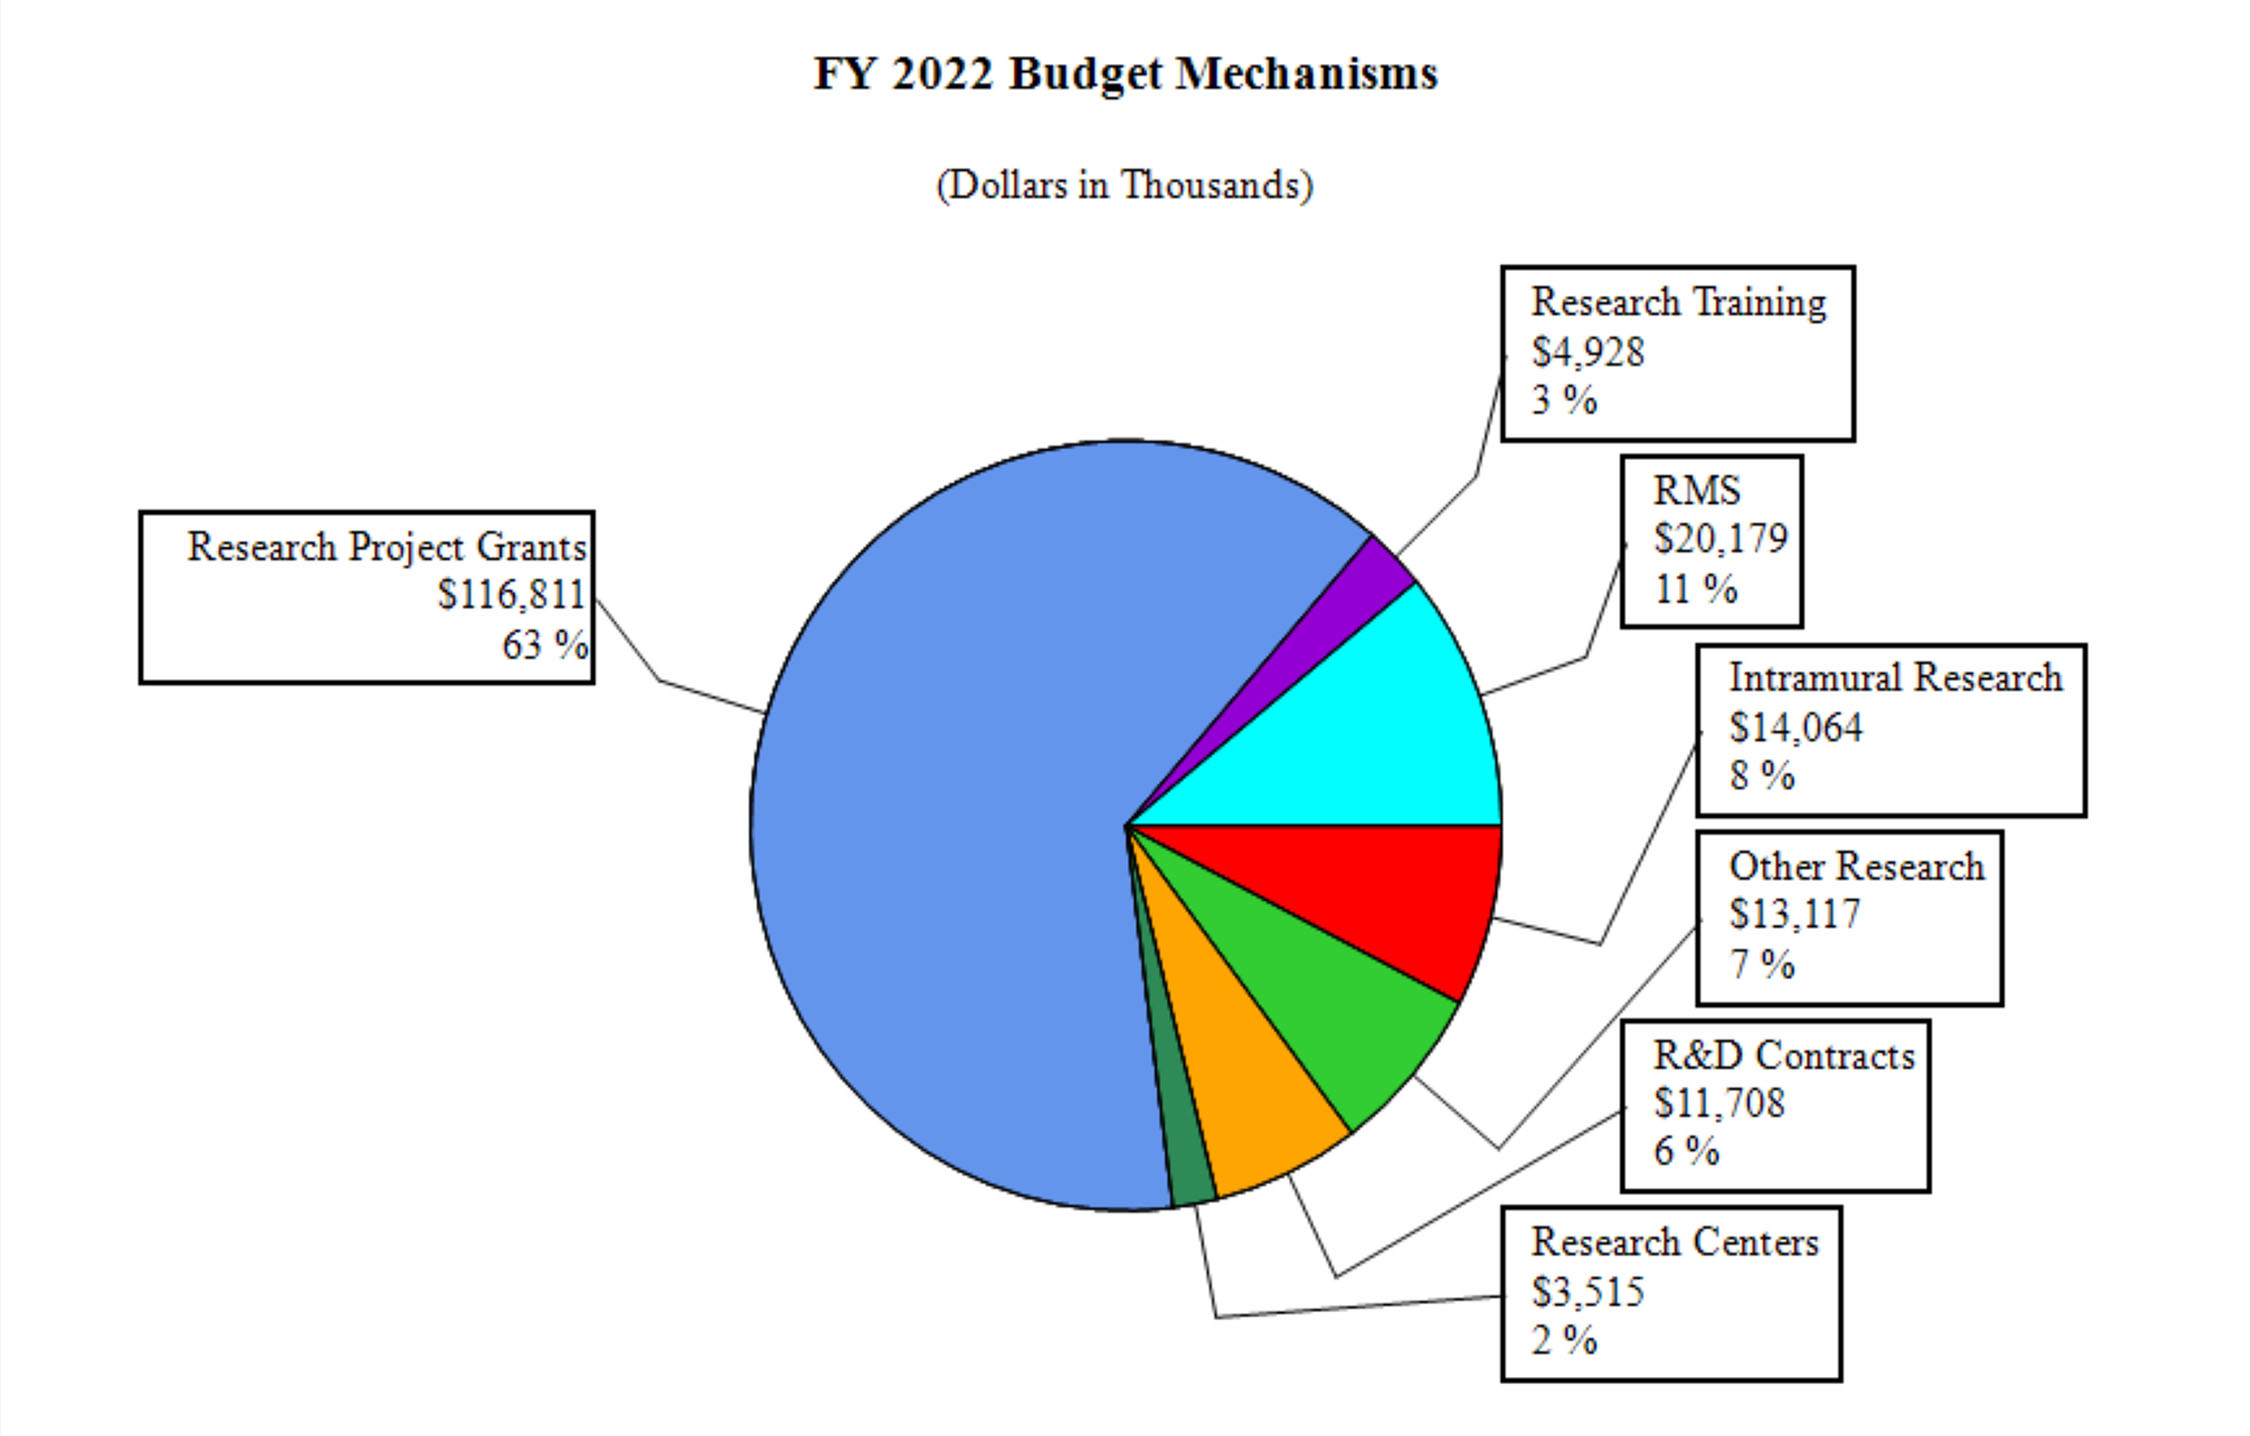 2022 Budget Mechanisms